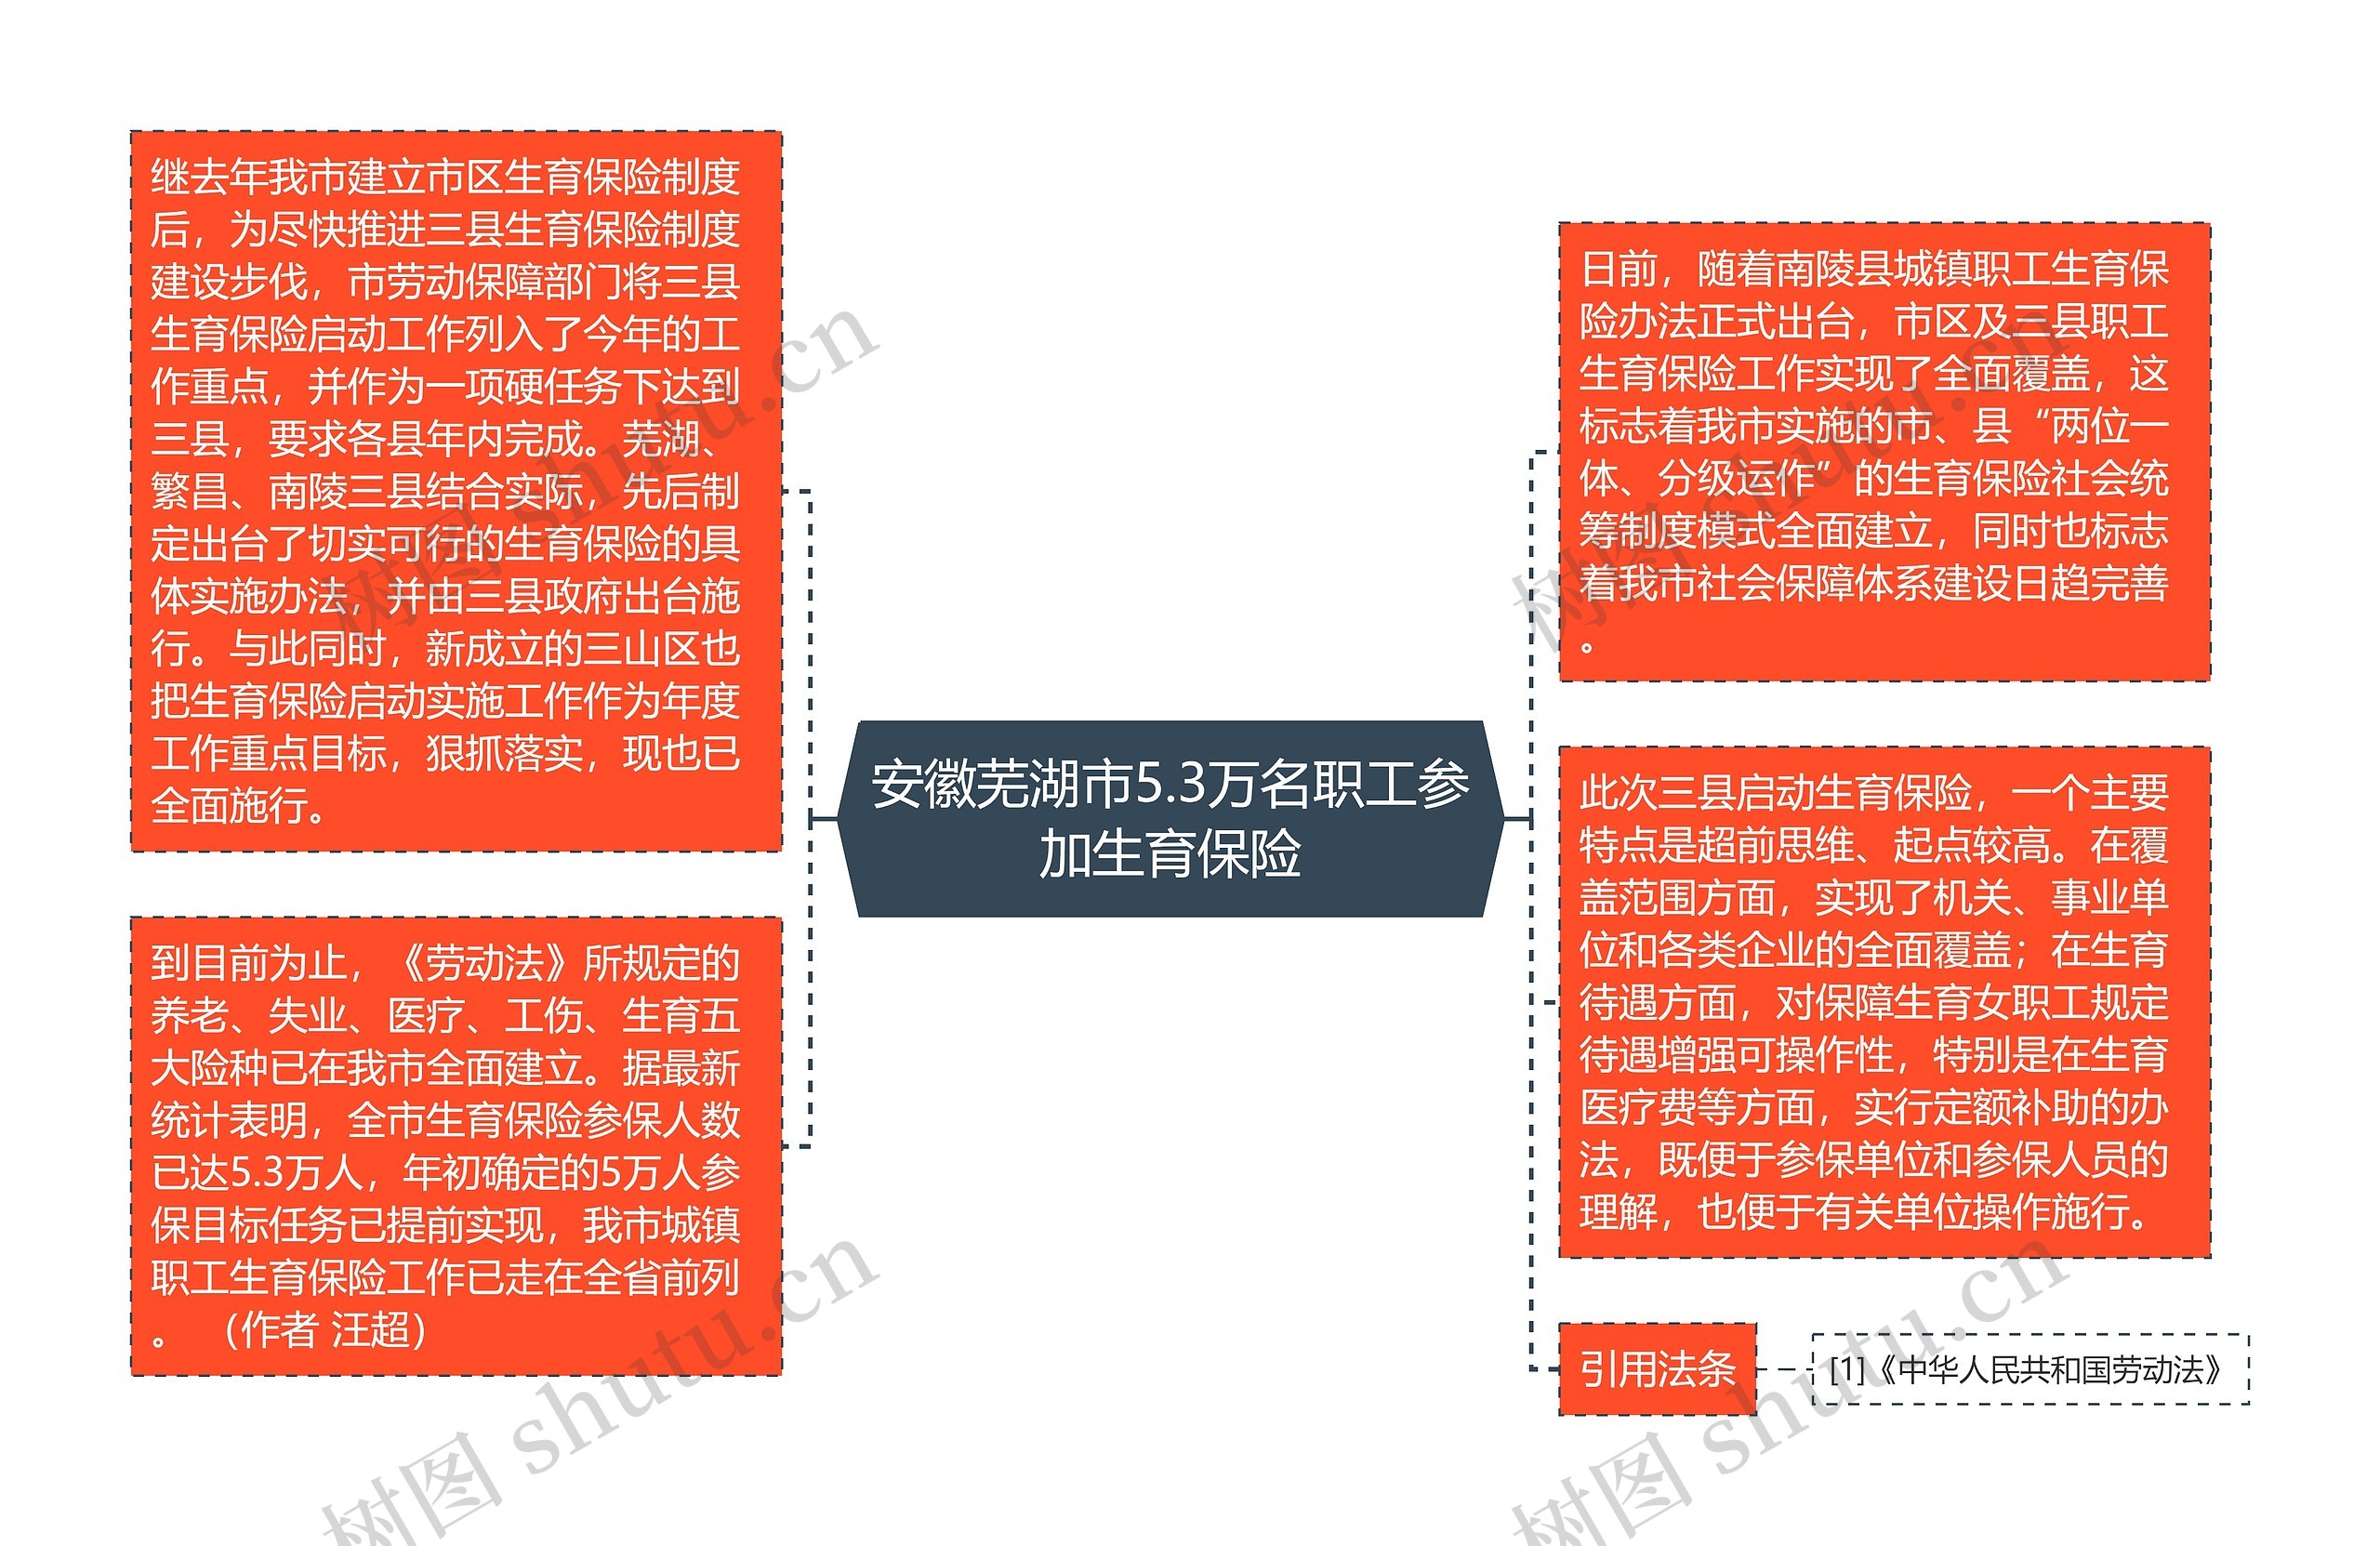 安徽芜湖市5.3万名职工参加生育保险思维导图